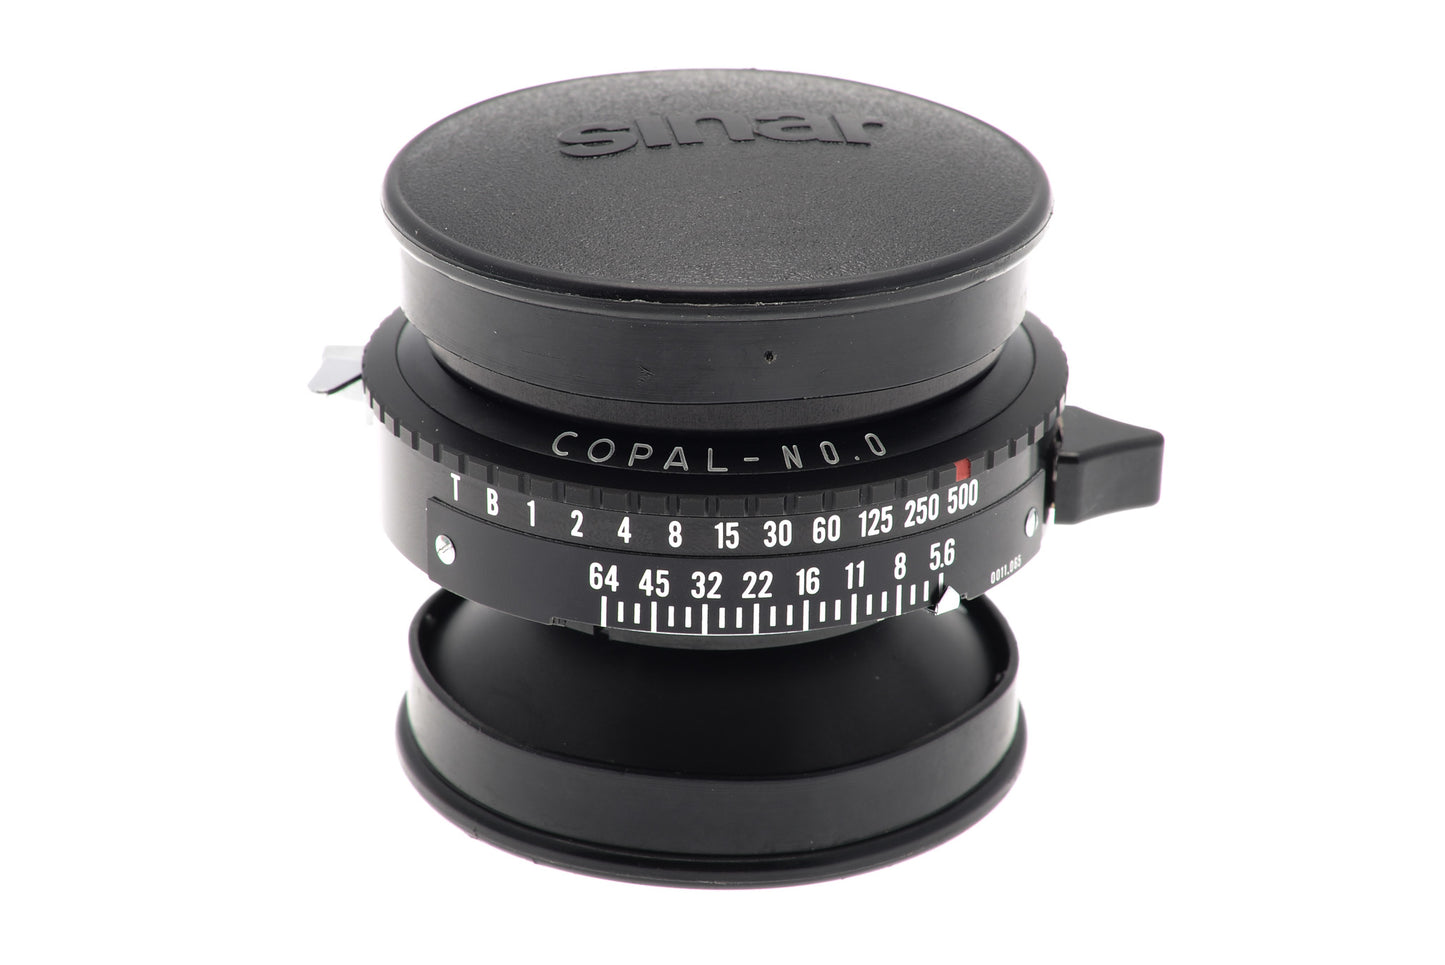 Sinar 150mm f5.6 Sinaron-SE/Sironar-S MC (Shutter) - Lens